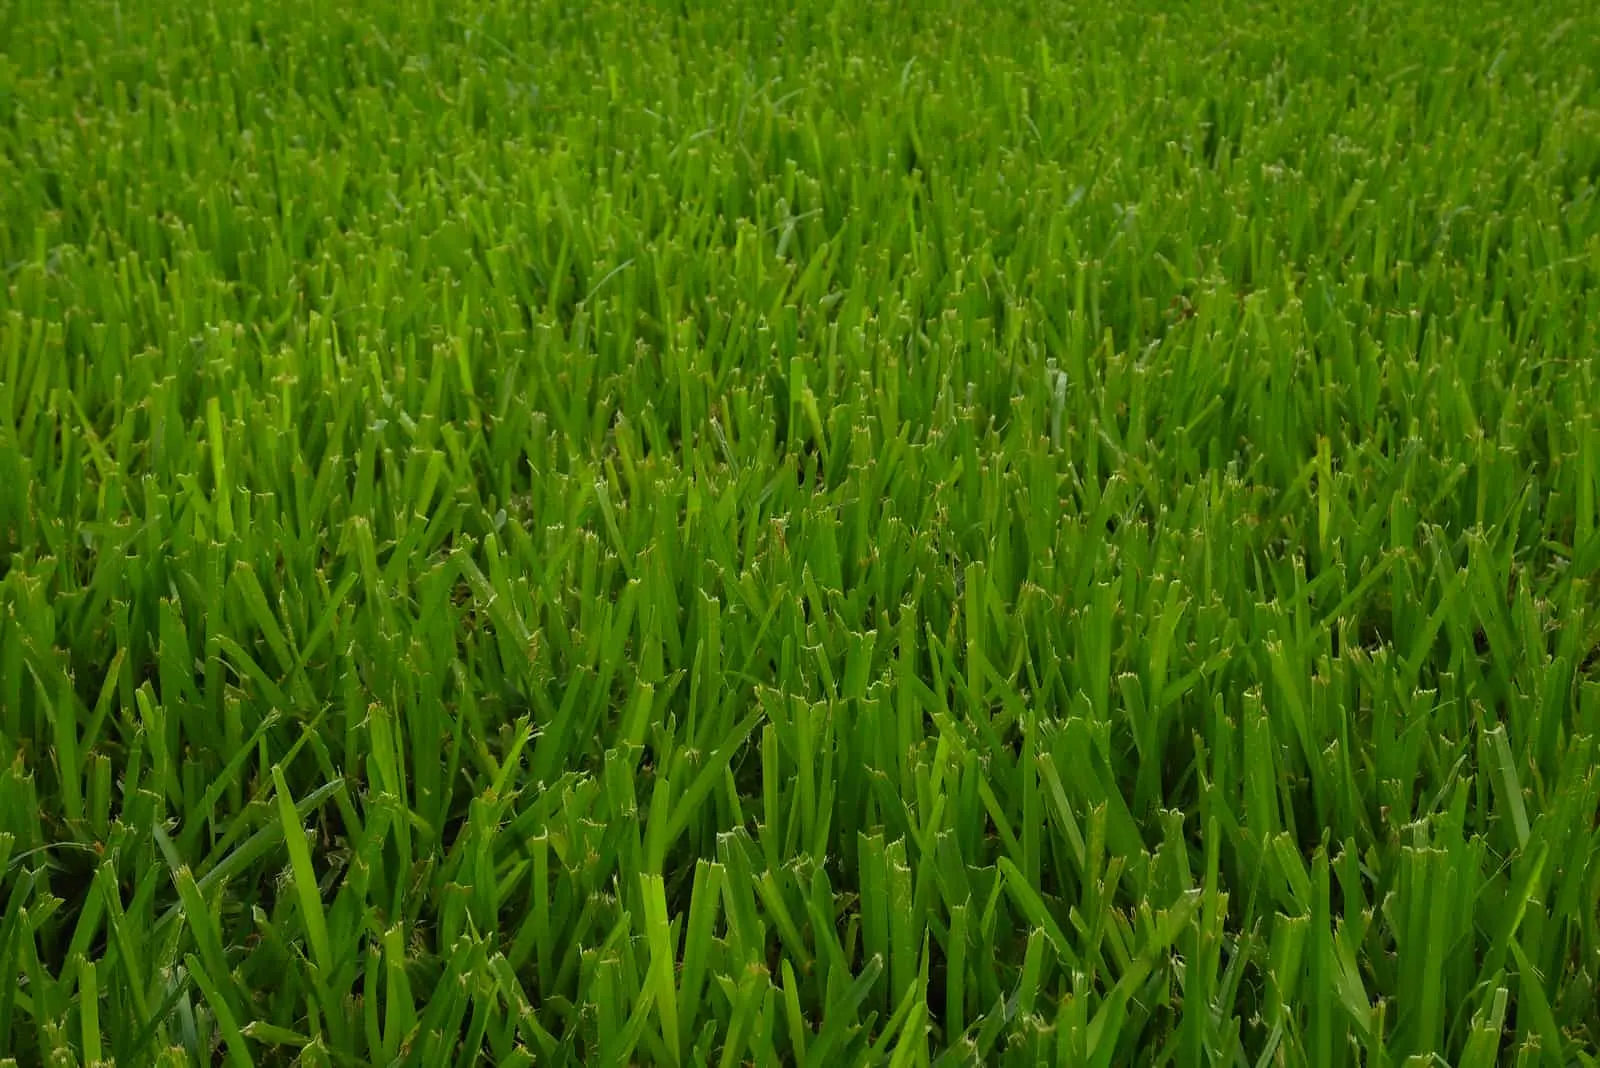 st augustine grass texture